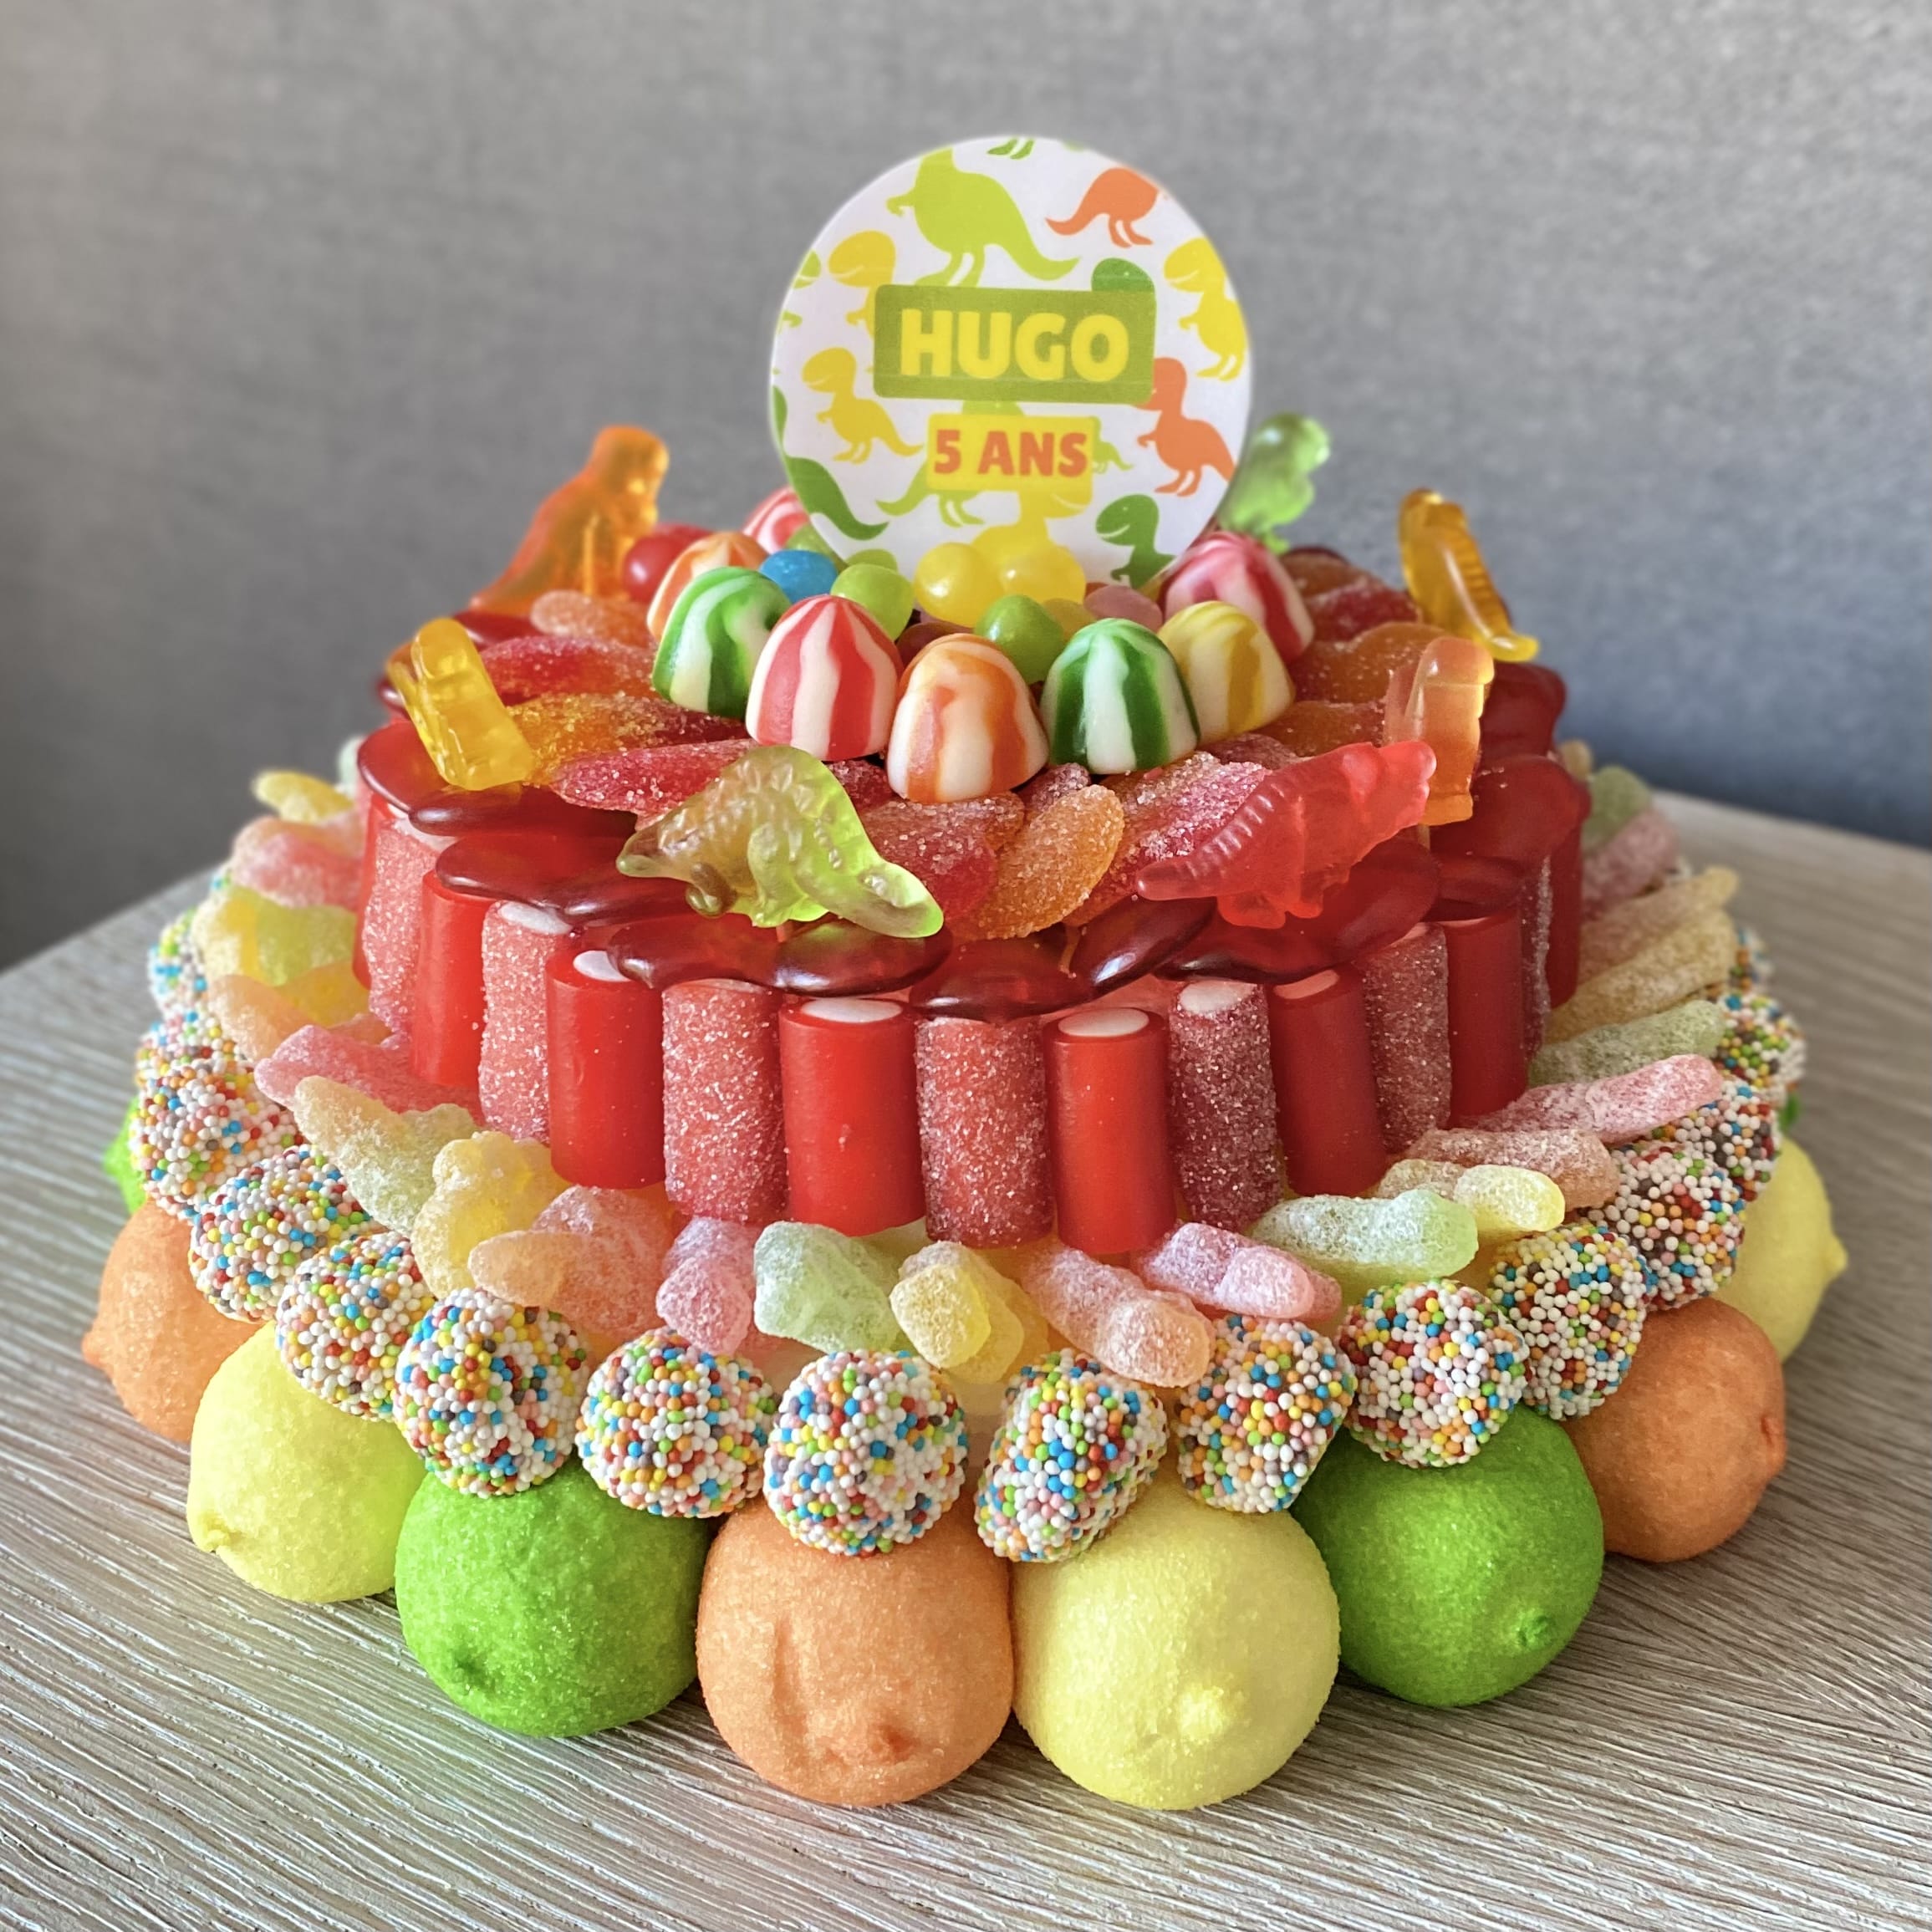 Gâteau de bonbons réalisé exclusivement avec des bonbons HARIBO